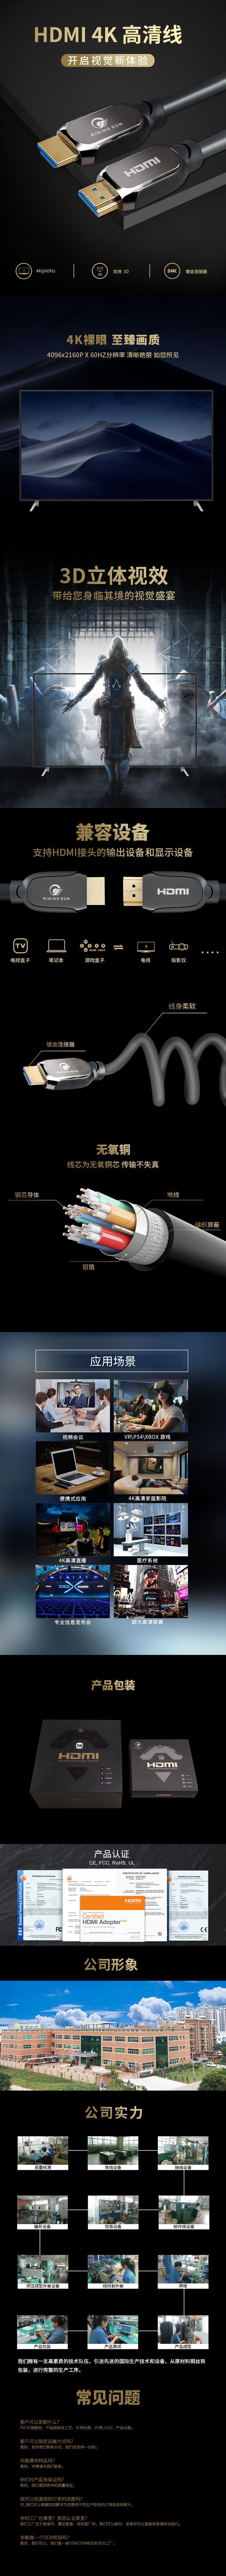 金属灰 HDMI 2.0中文 拷贝.jpg